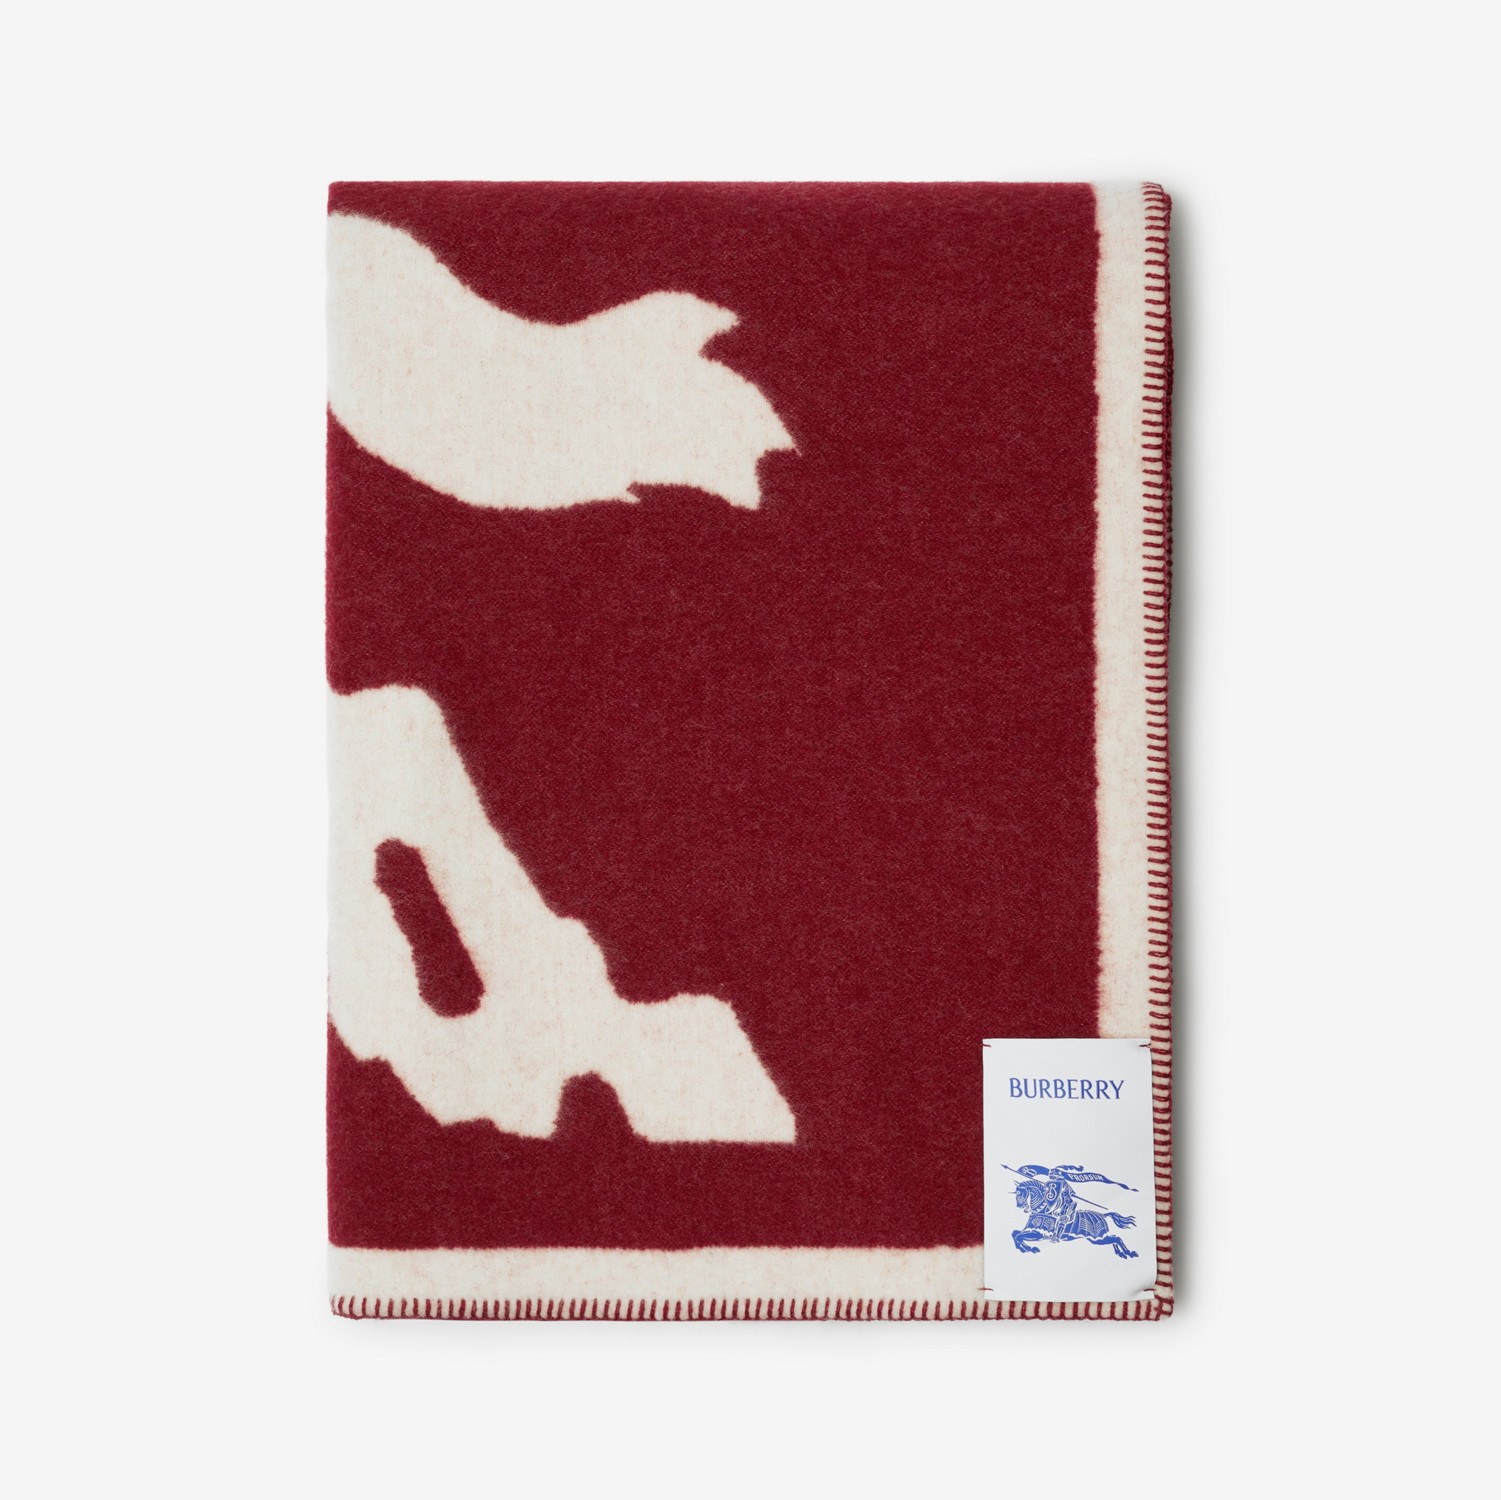 马术骑士徽标羊毛毯 (树莓红) | Burberry® 博柏利官网